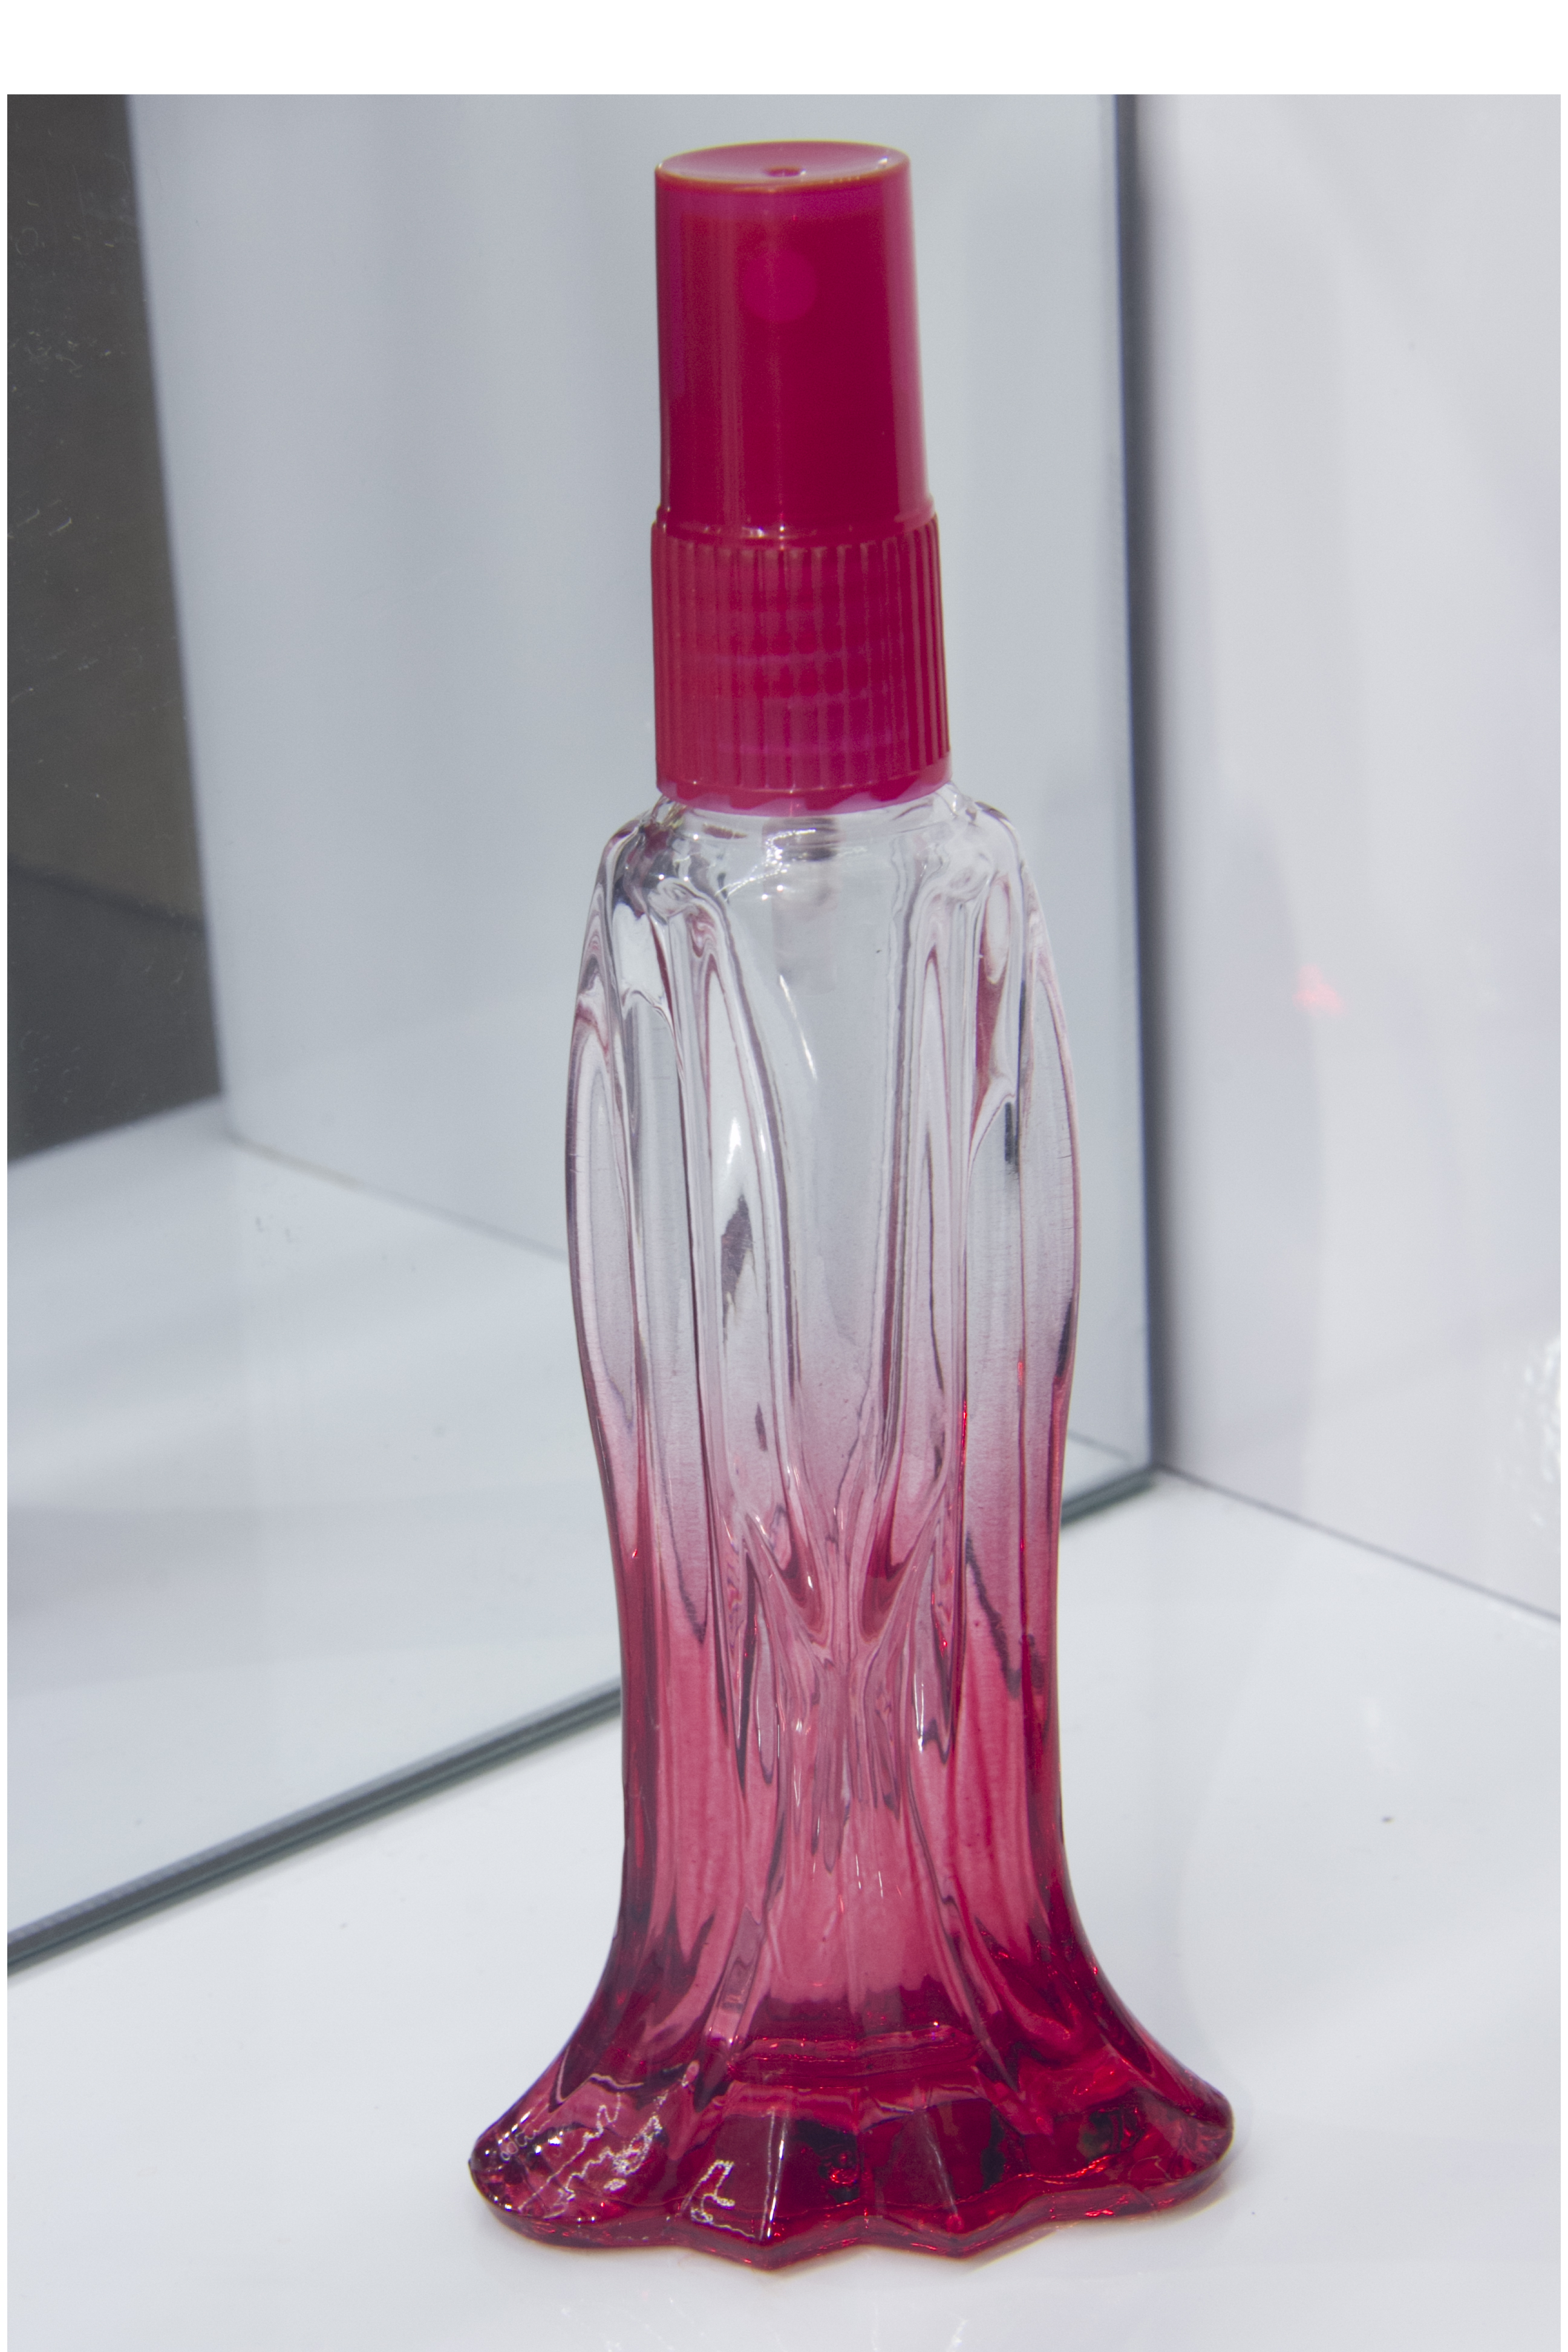 鱼瓶 瓶子喷头可喷式喷头可喷颜色产品图